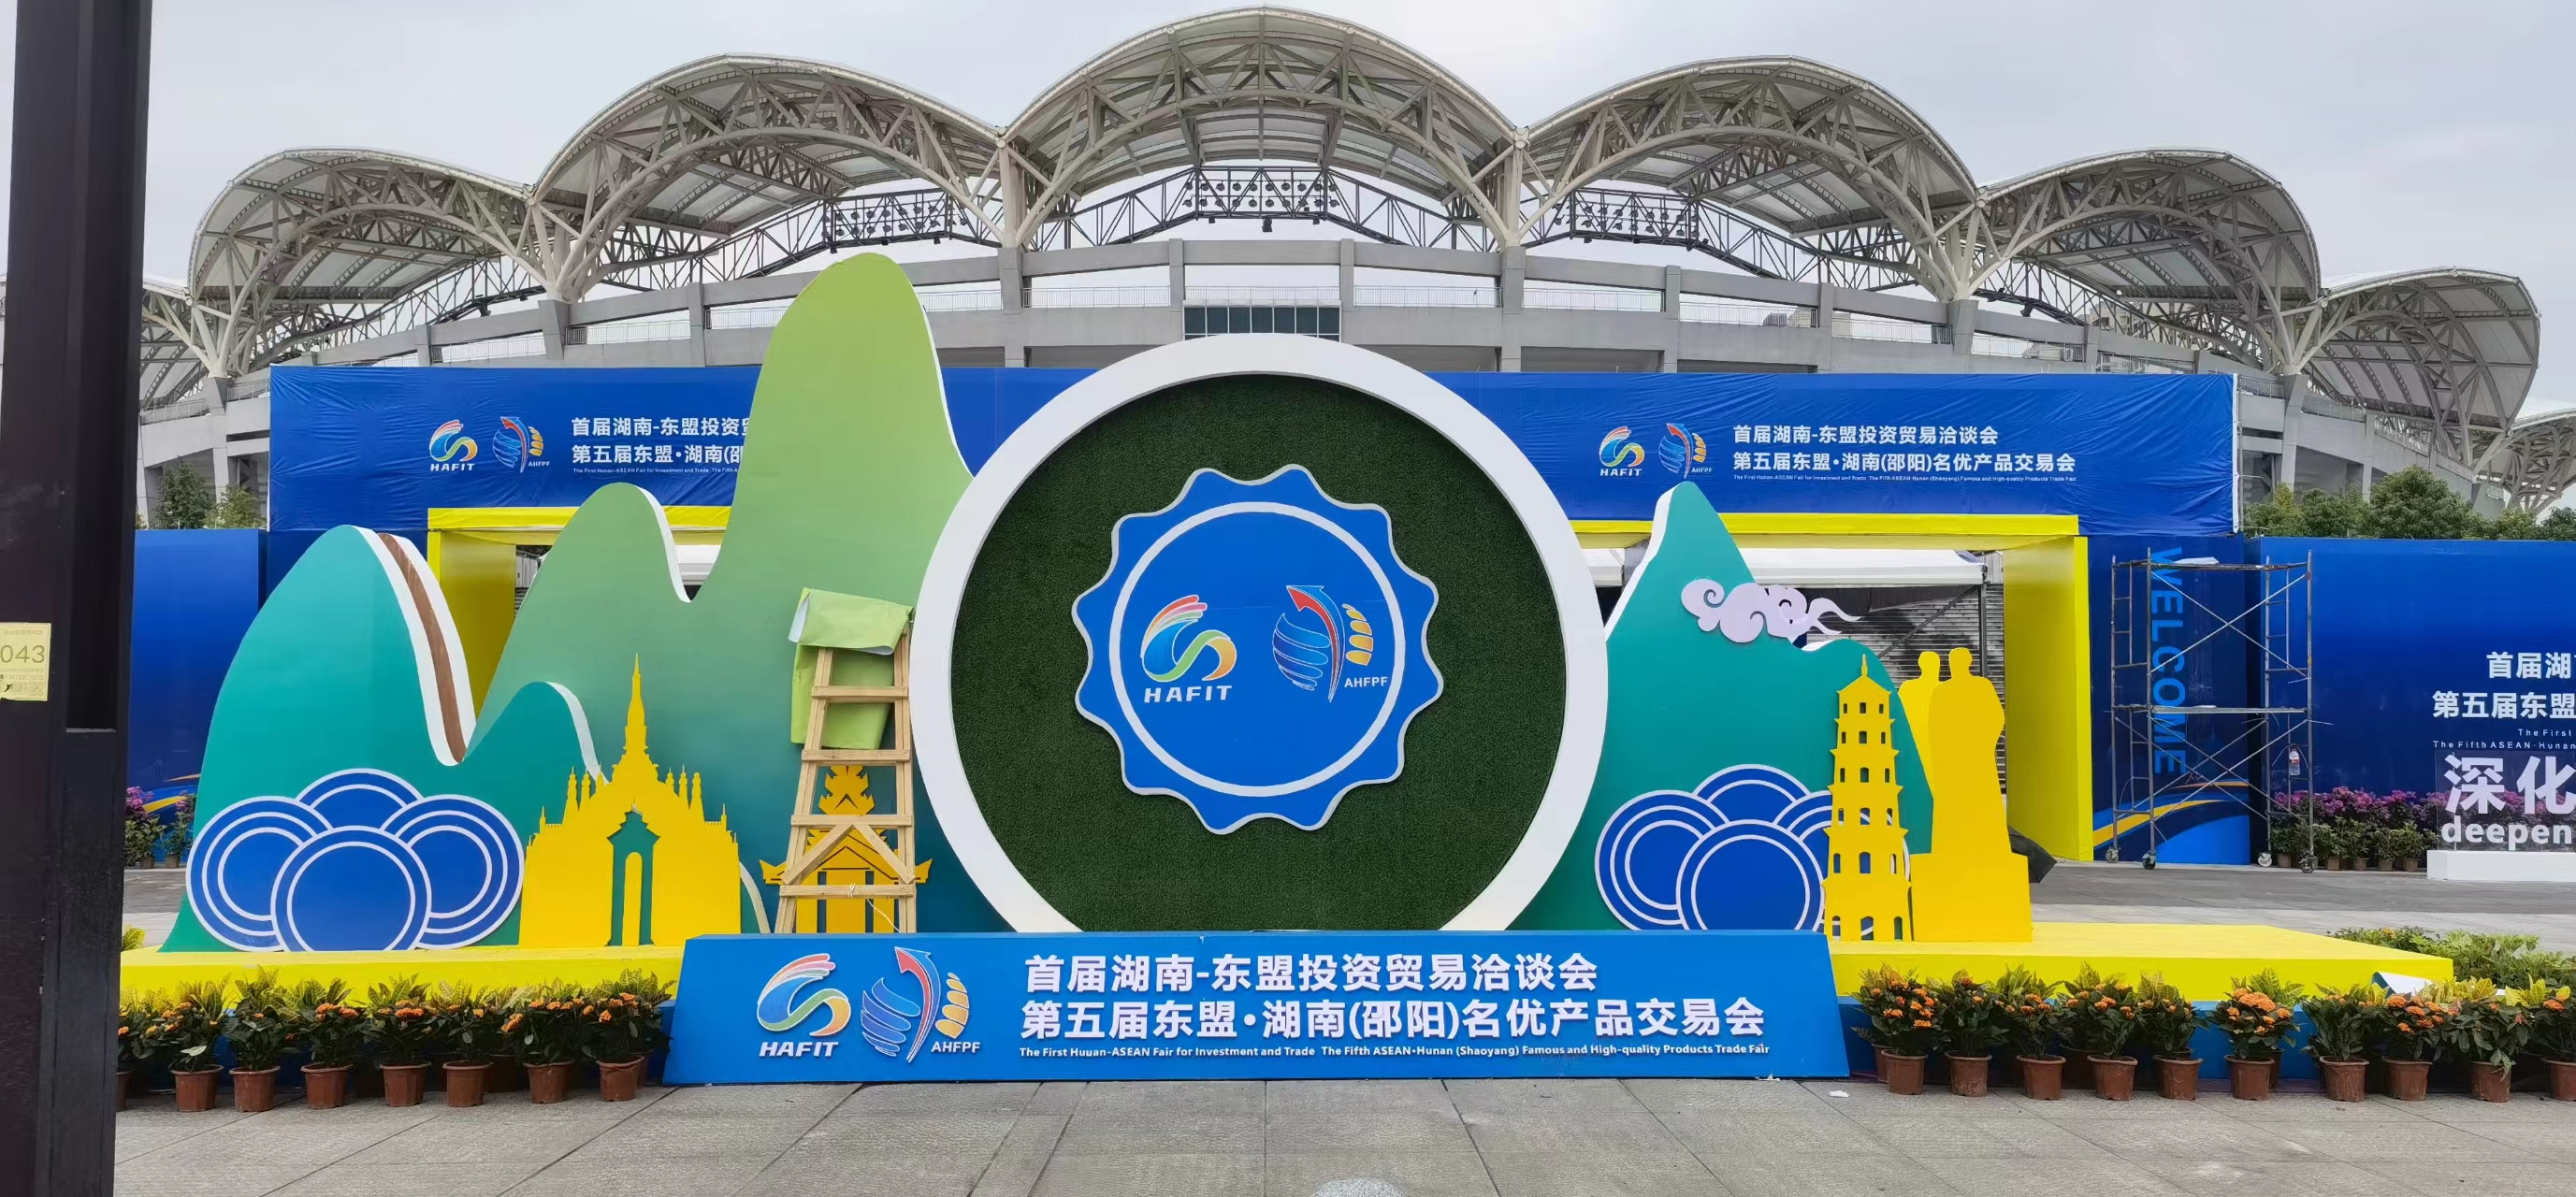 Primul Târg de Investiții și Comerț Hunan-ASEAN a fost deschis la Shaoyang